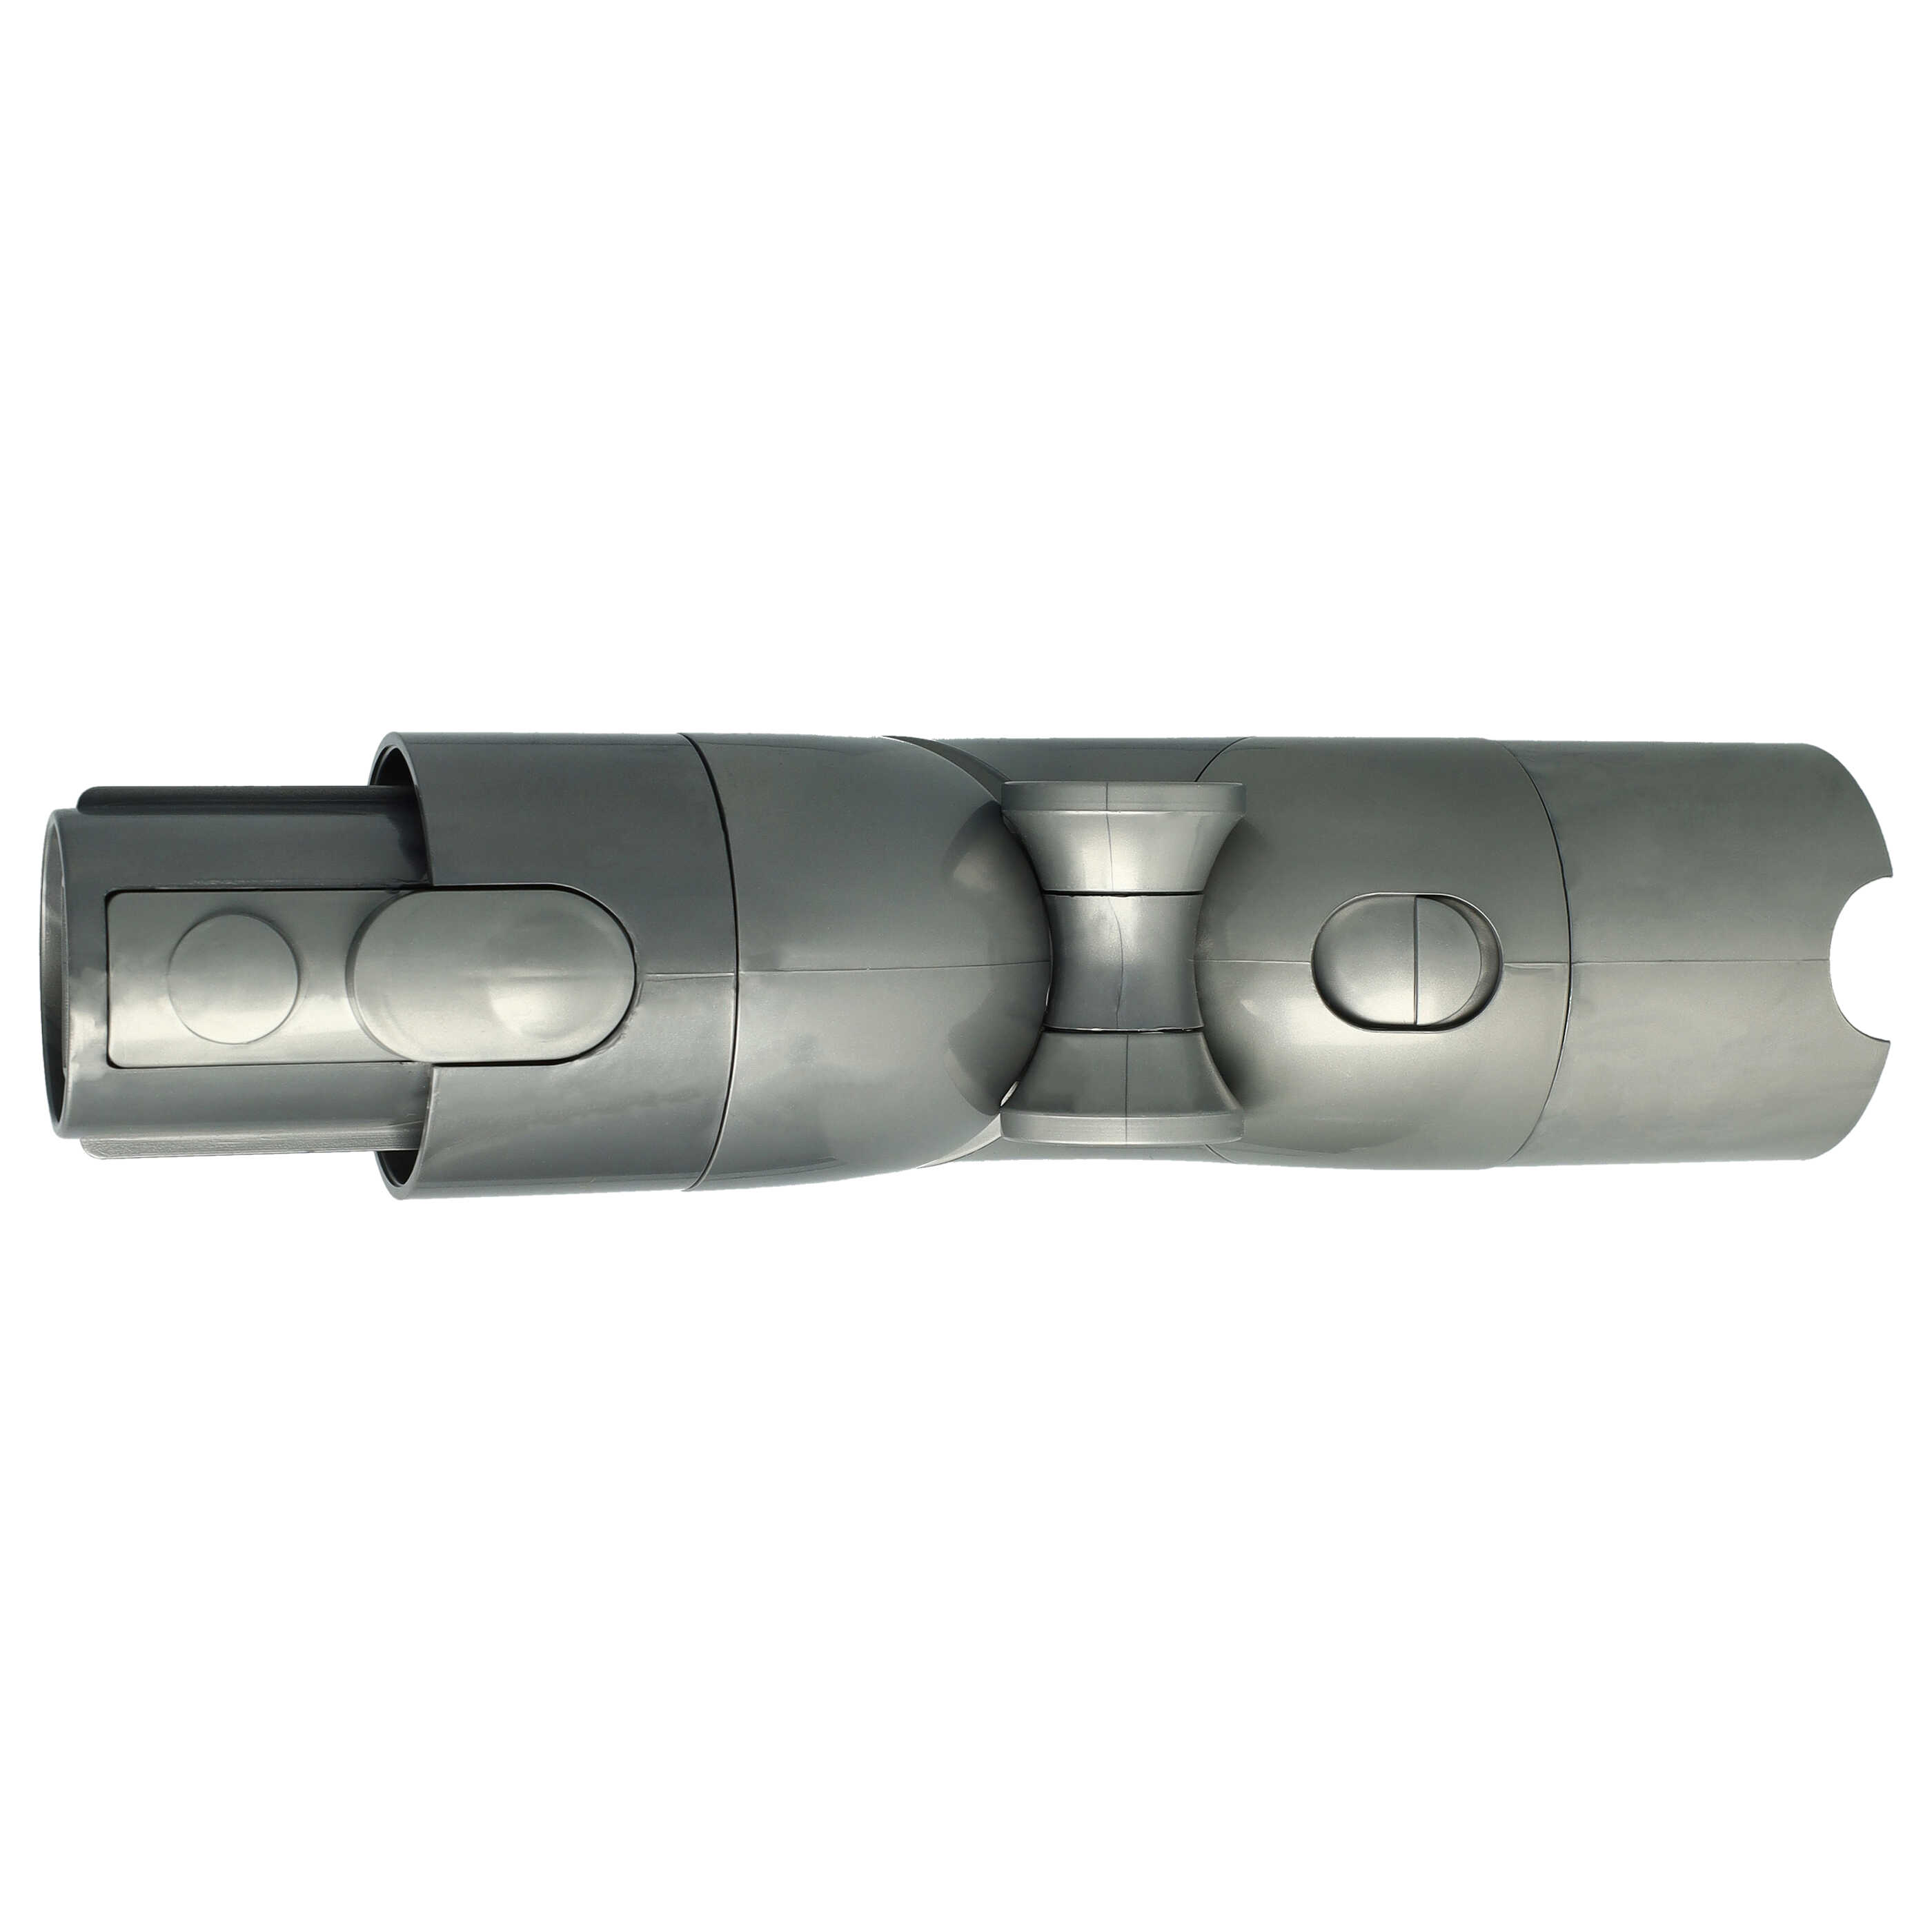 Anschlussadapter als Ersatz für Dyson Flex Adapter 970790-01 passend für Dyson V11 - 90° Winkel-Adapter